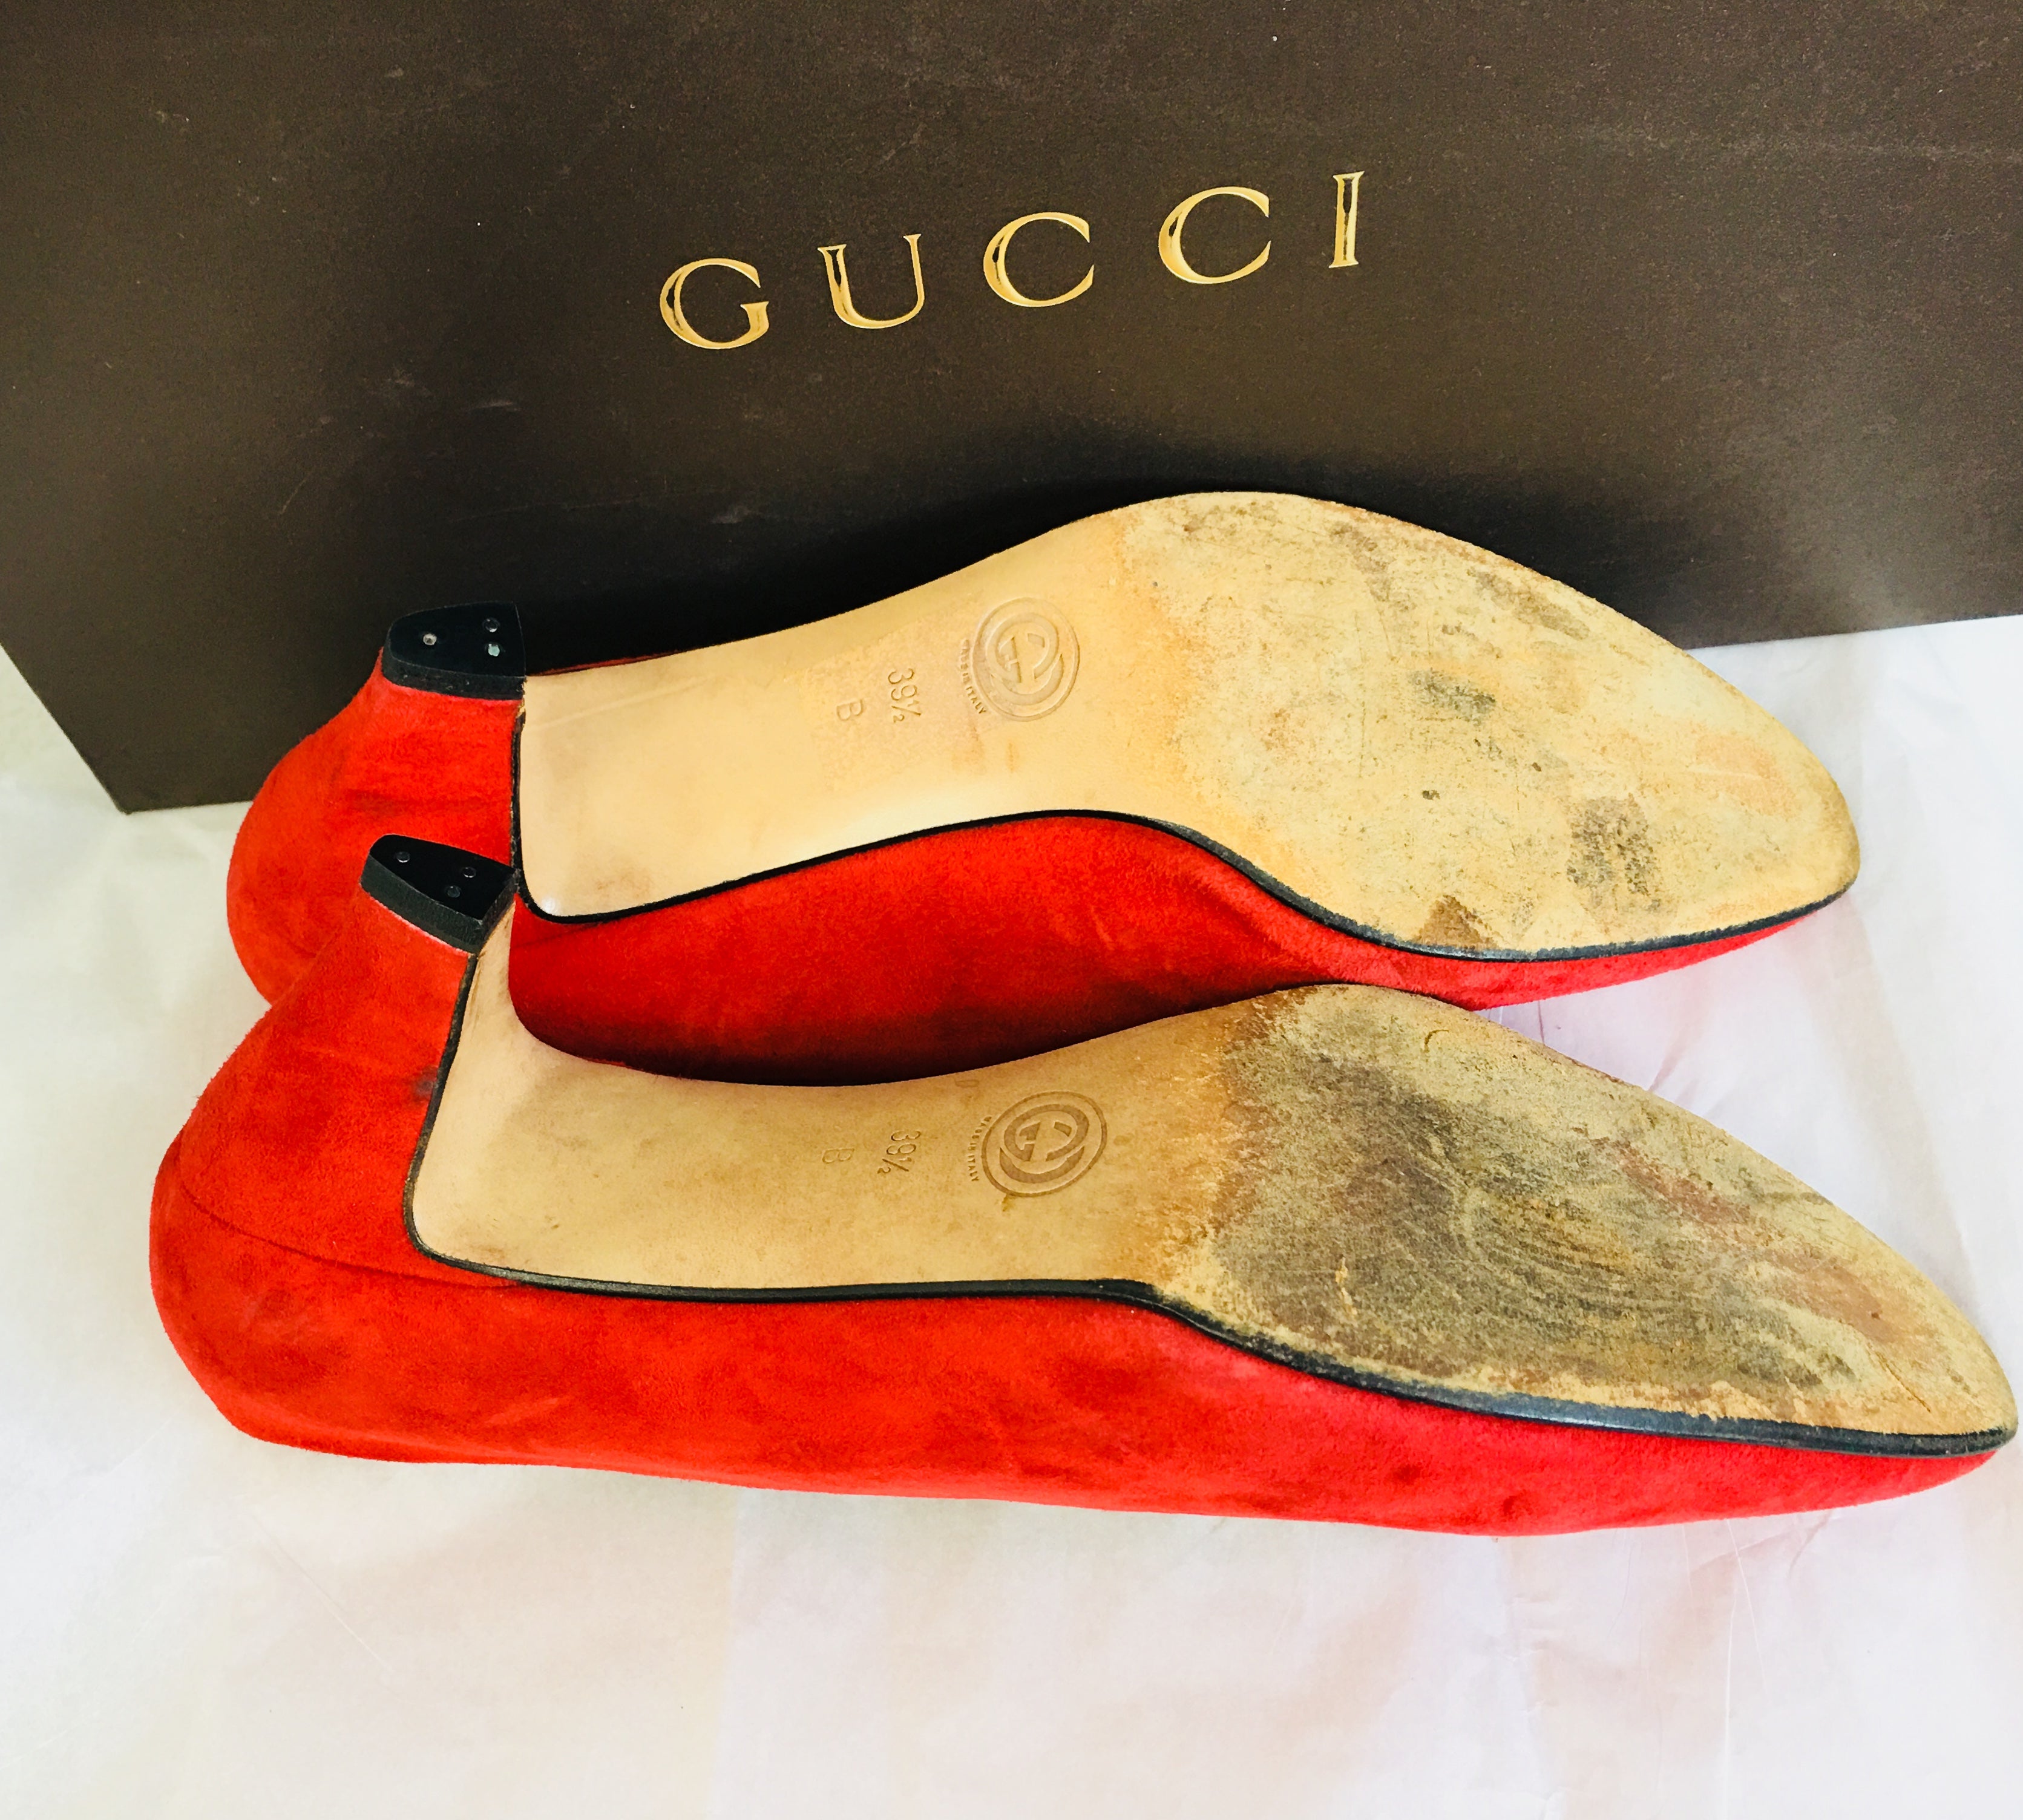 Gucci Red Suede Pumps - Vanity's Vault